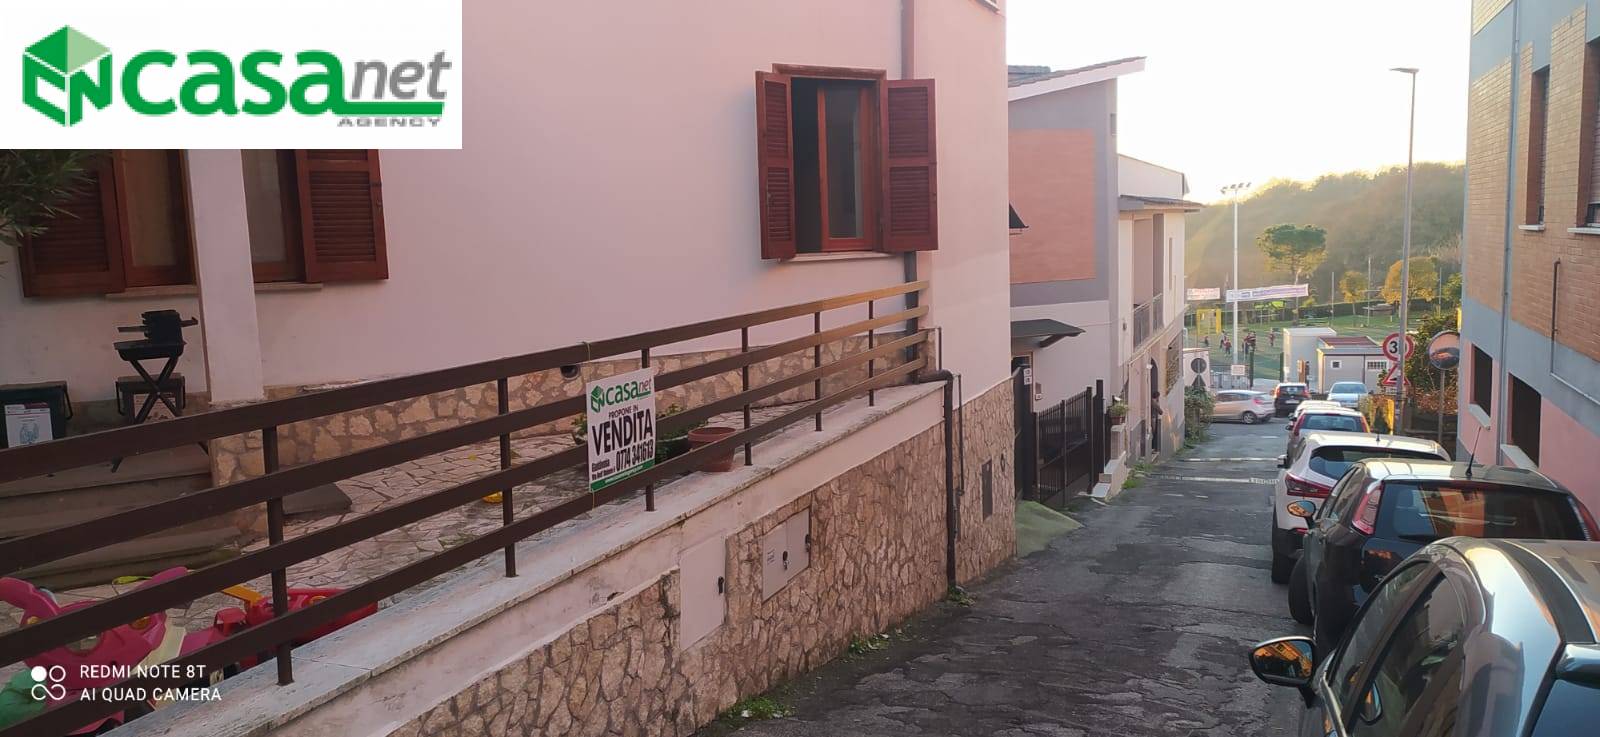 Appartamento in vendita a Mentana, 4 locali, zona Zona: Casali, prezzo € 185.000 | CambioCasa.it